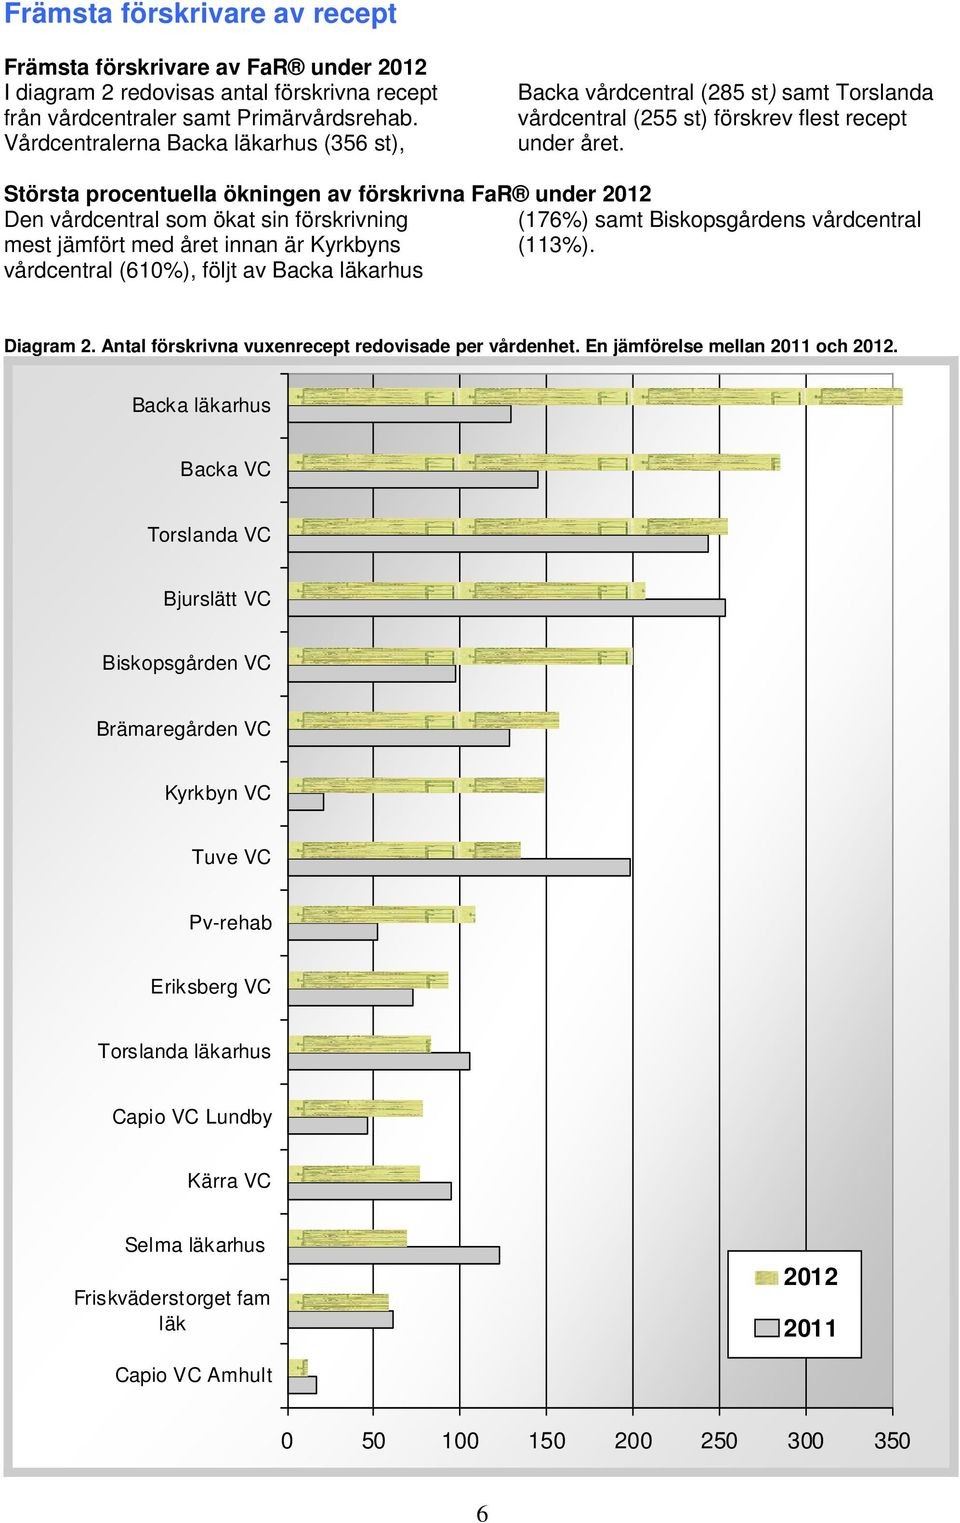 Största procentuella ökningen av förskrivna FaR under 212 Den vårdcentral som ökat sin förskrivning (176%) samt Biskopsgårdens vårdcentral mest jämfört med året innan är Kyrkbyns (113%).